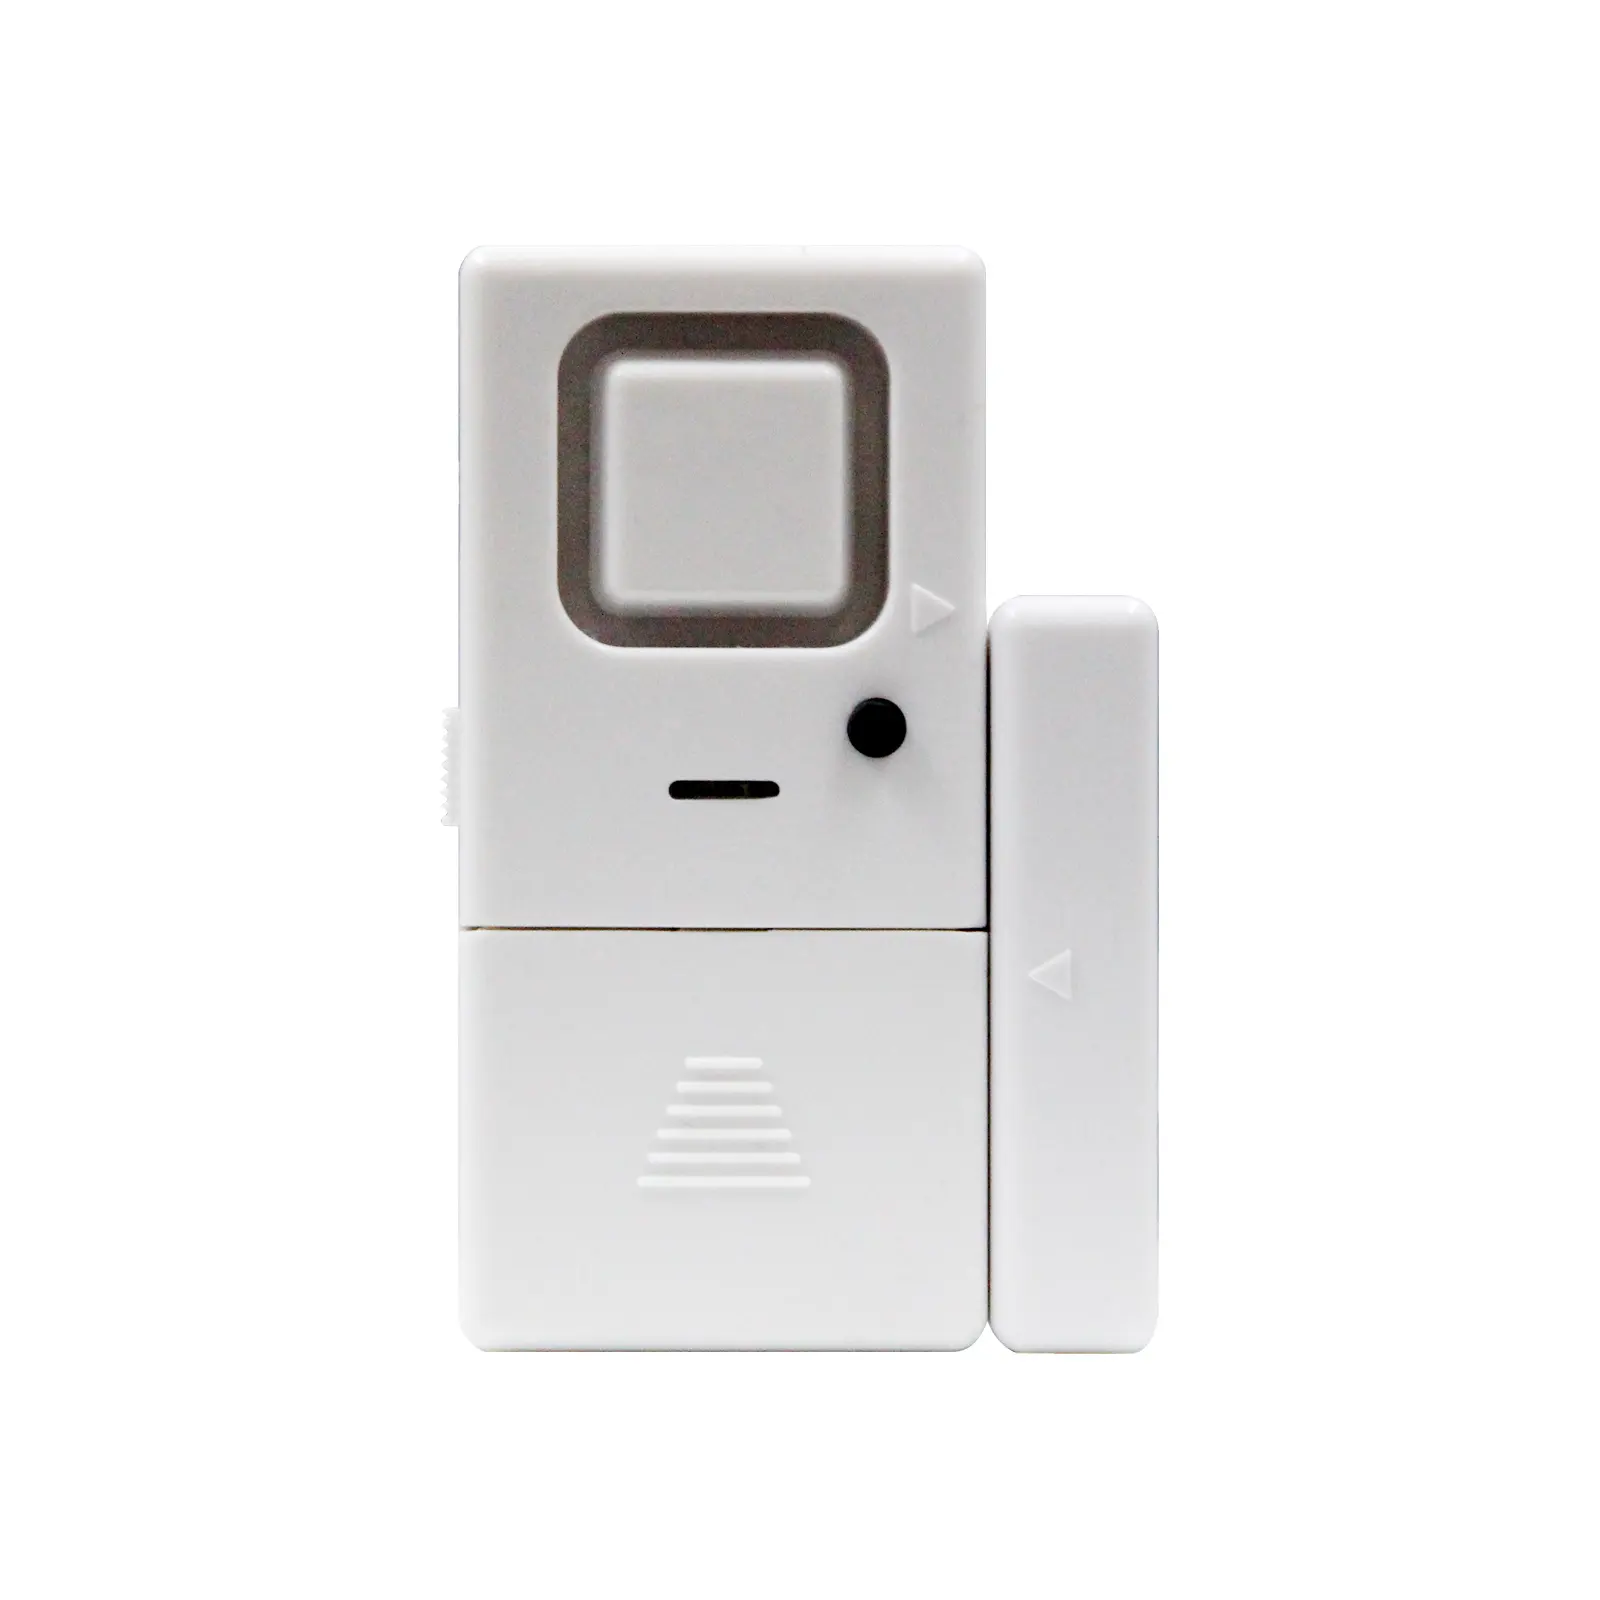 Bester Preis Persönliche Sicherheit Magnetischer Tür fensters ensor Alarm Smart Standalone 120db Tür sensor